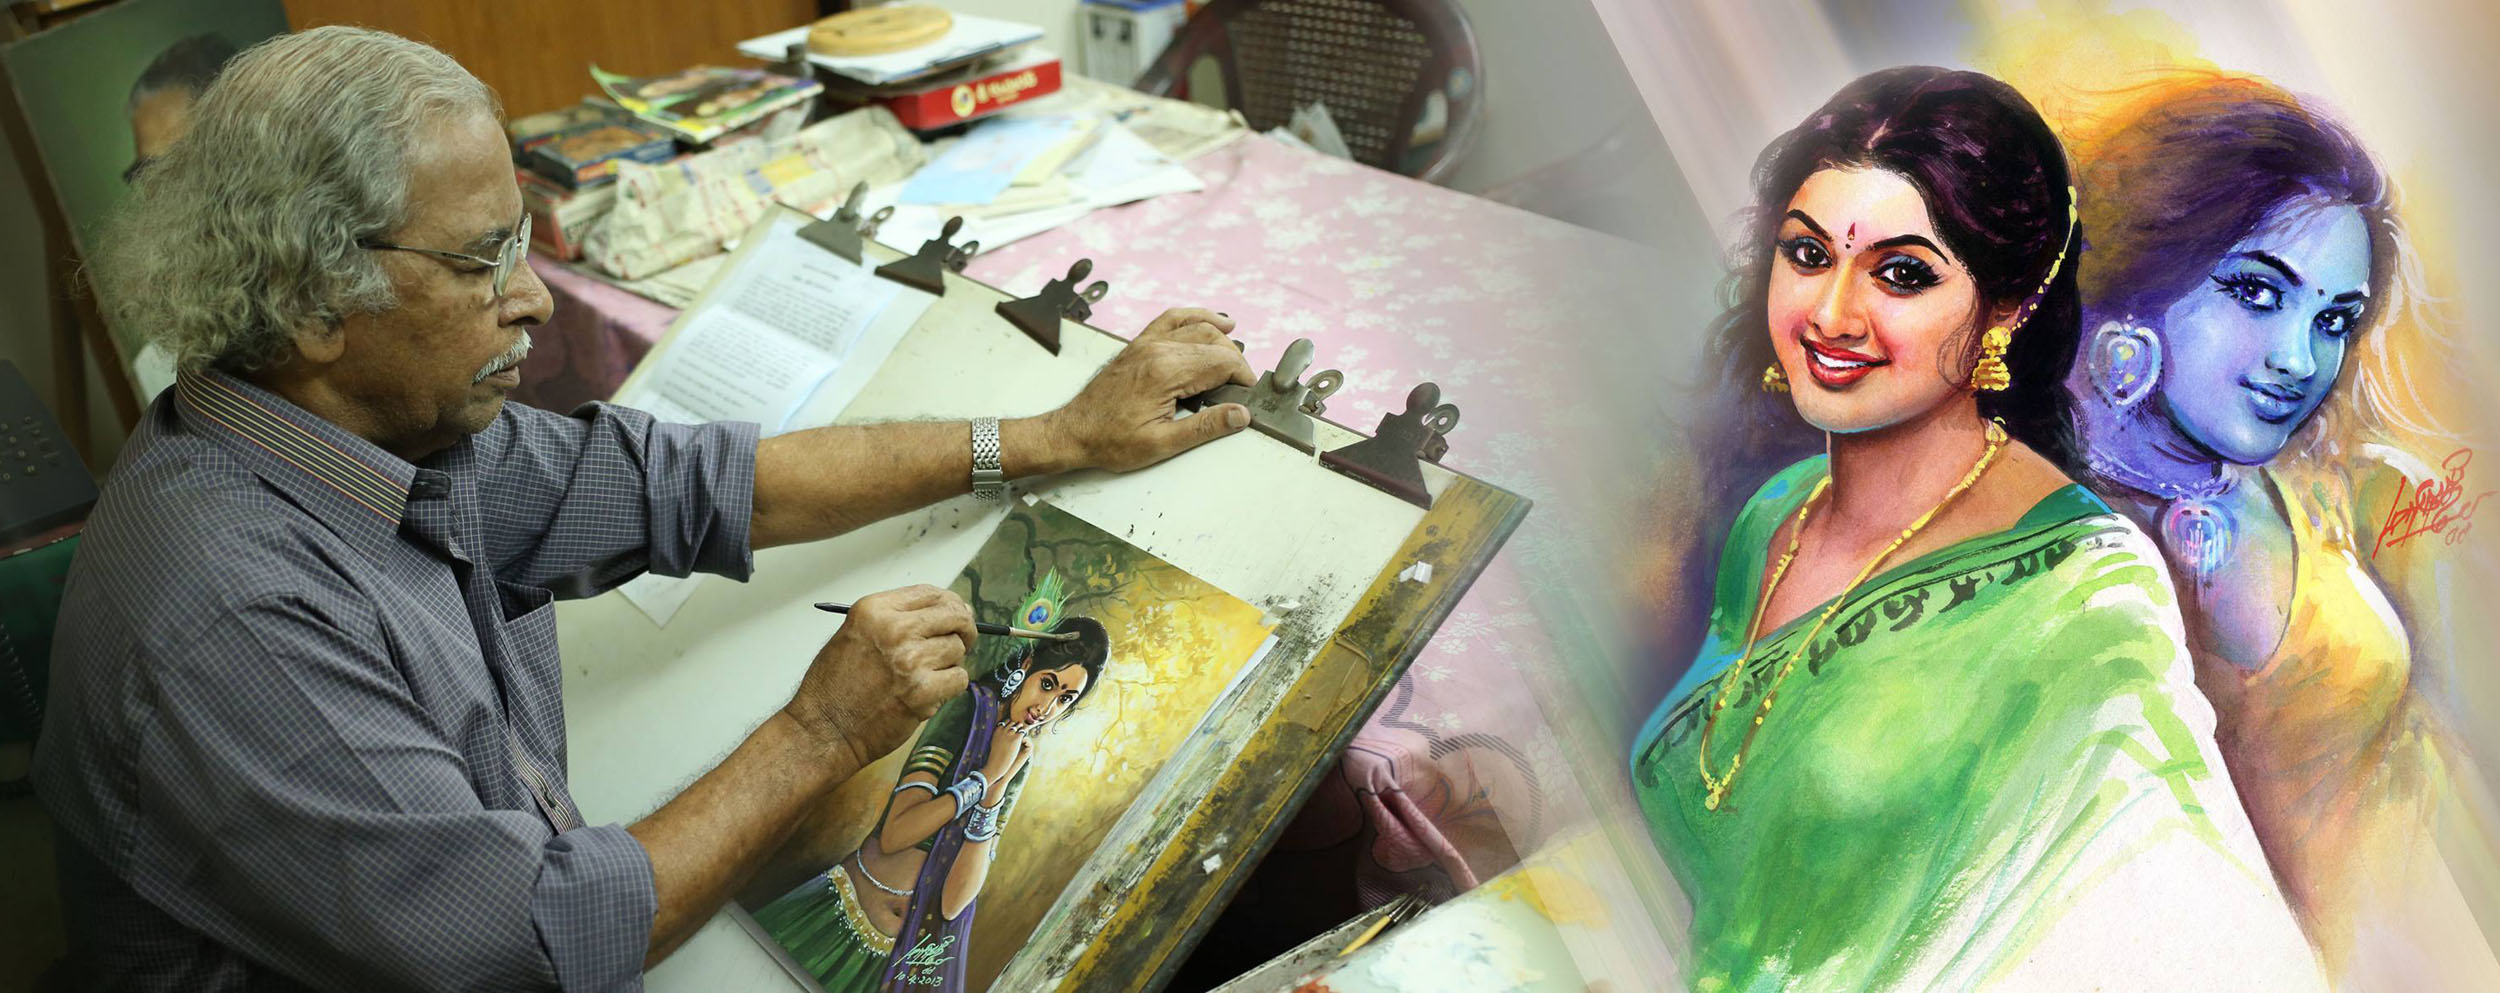 painting tamil nadu artist maruthi